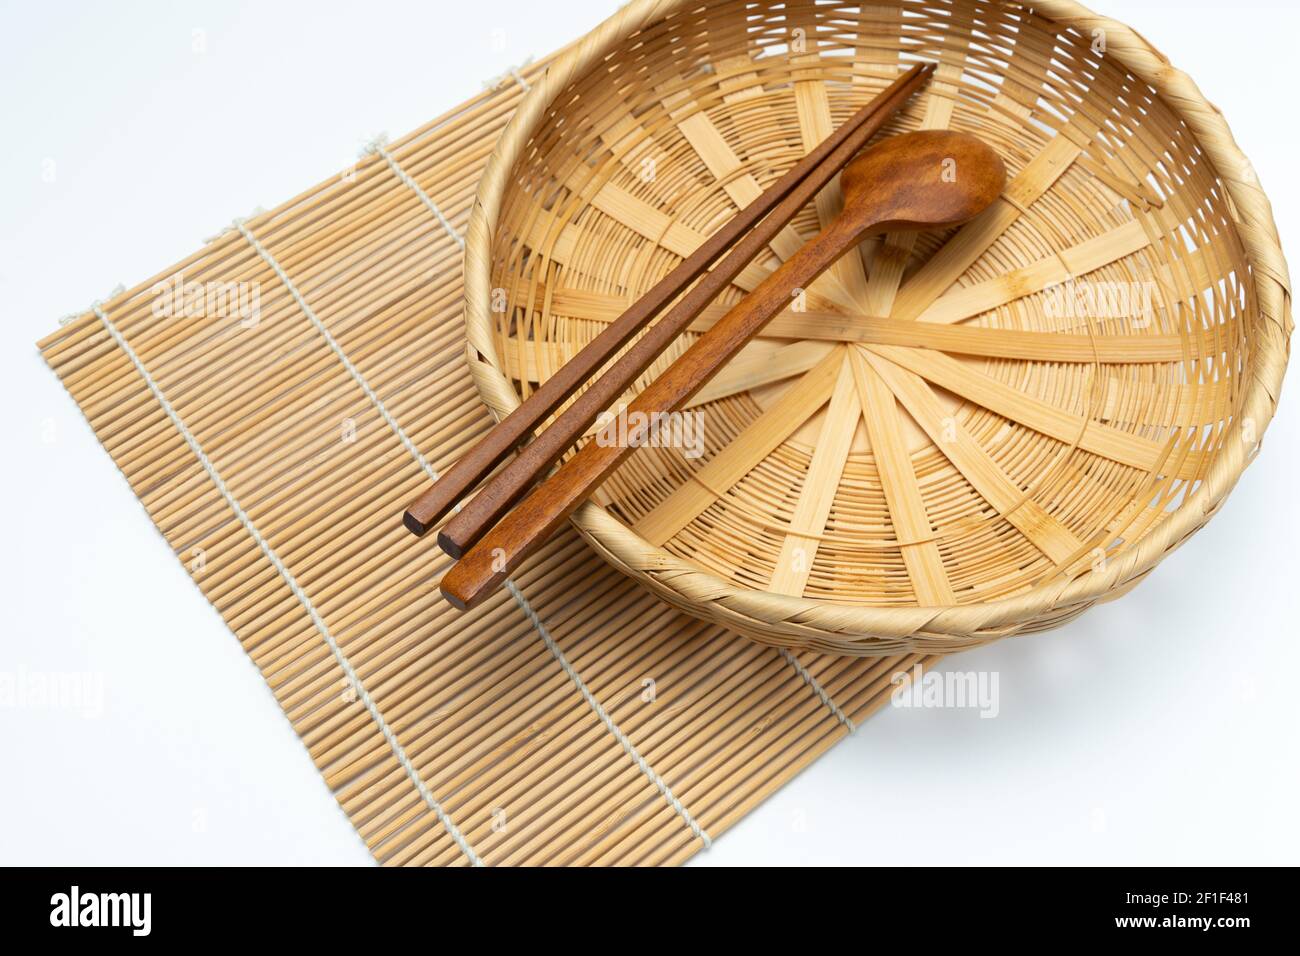 Wooden cutlery, wooden chopsticks, bamboo basket, bamboo mat Stock Photo